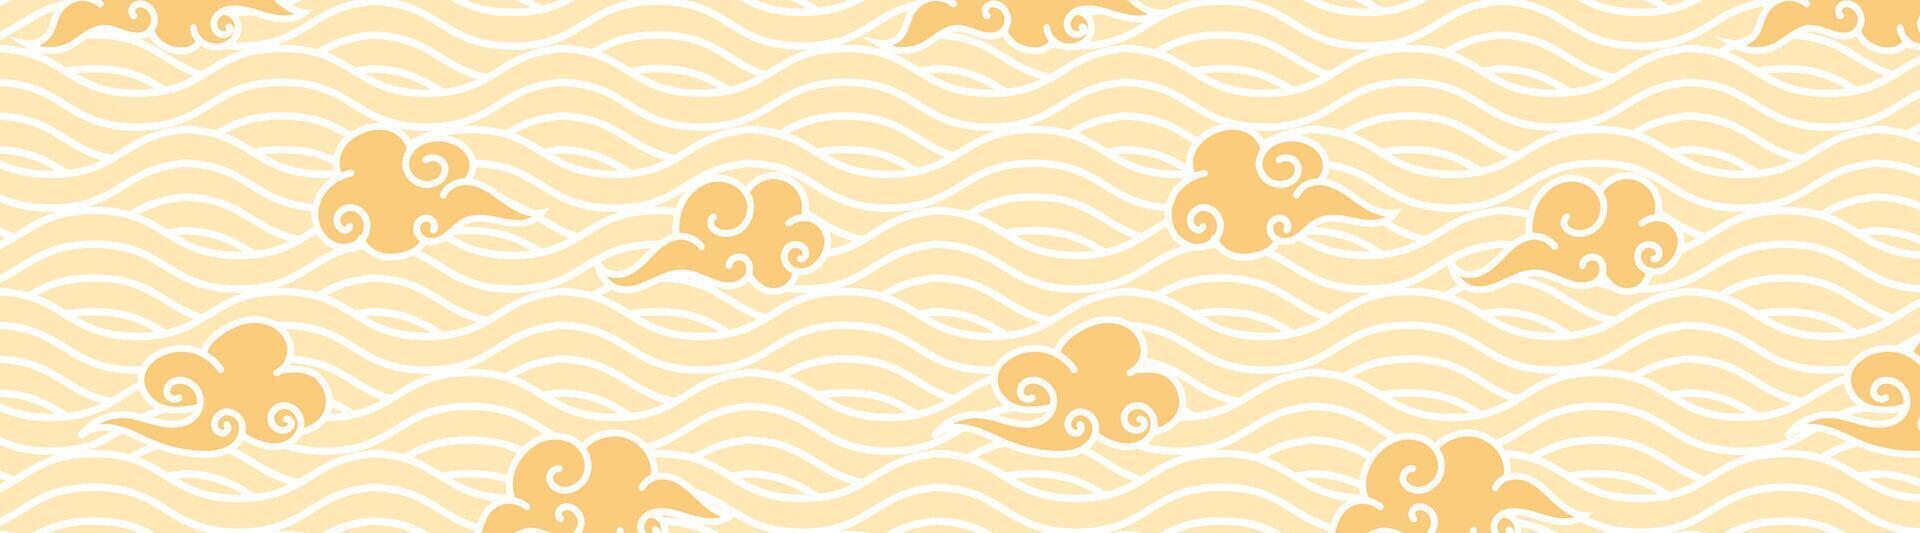 giallo onda senza soluzione di continuità modello giapponese stile con ornamentale nube vettore